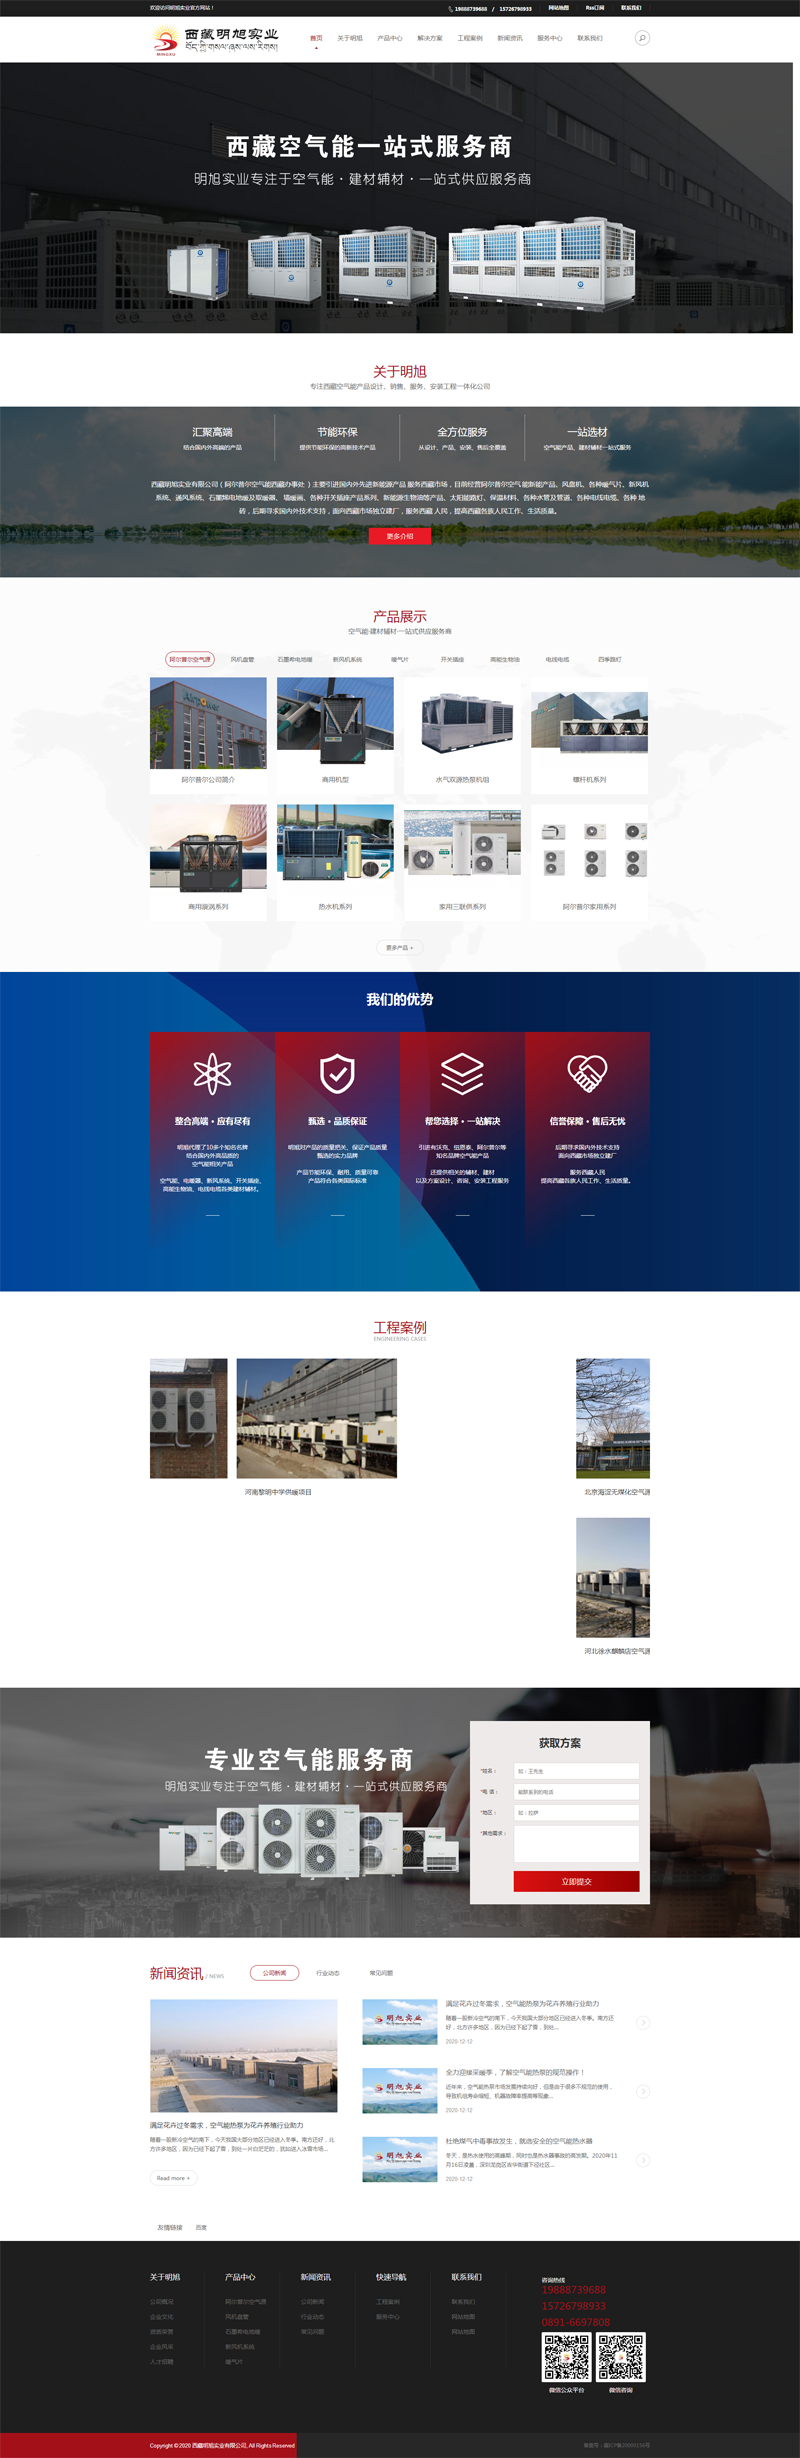 湖南空气能公司全网营销型网站正式开通